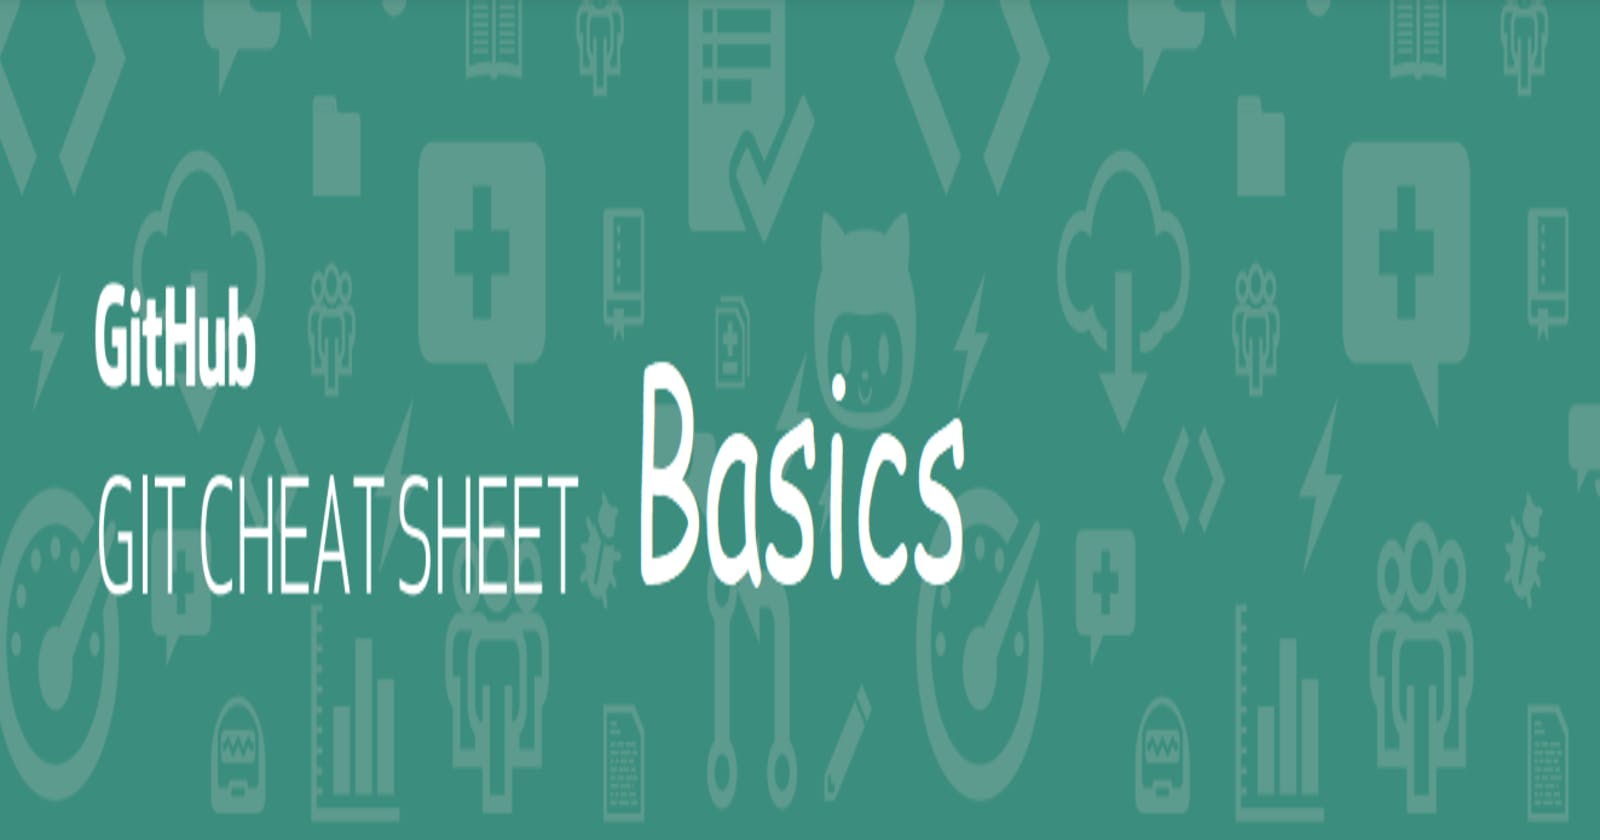 Git Bash Basics CHEAT SHEET with images